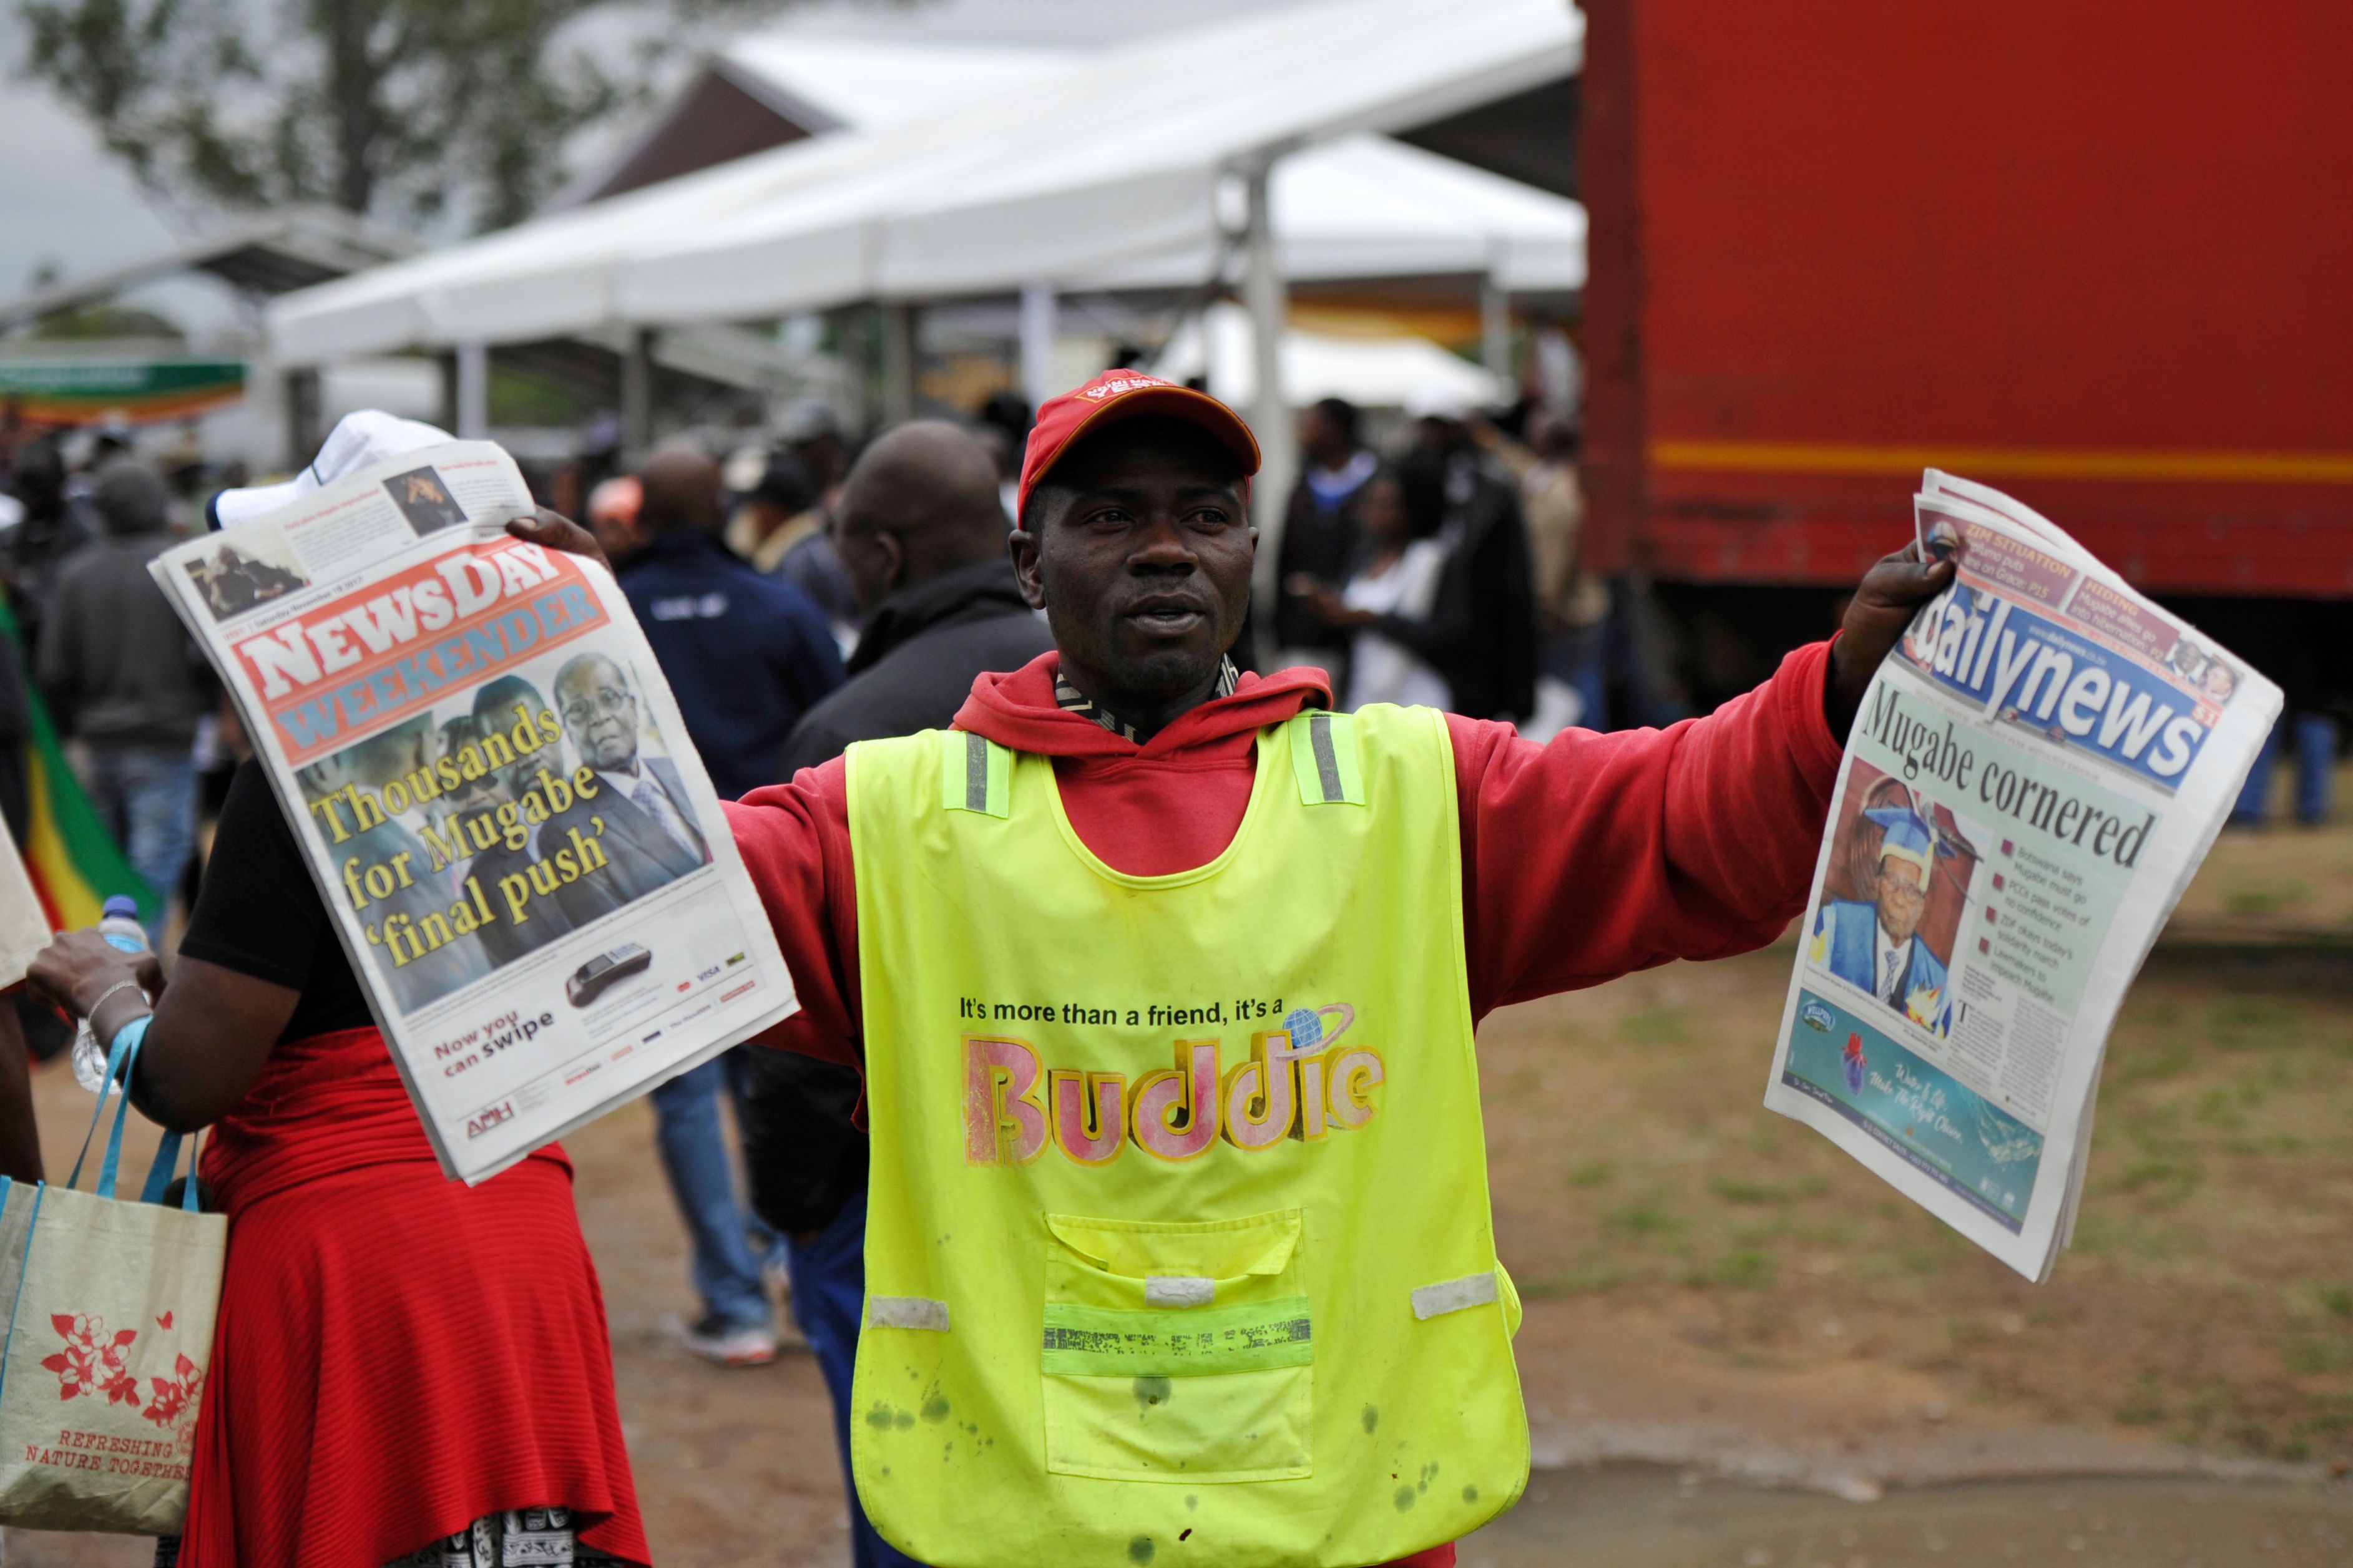 متظاهر يحمل الصحف المتناولة تفاصيل الأزمة السياسية فى زيمبابوى